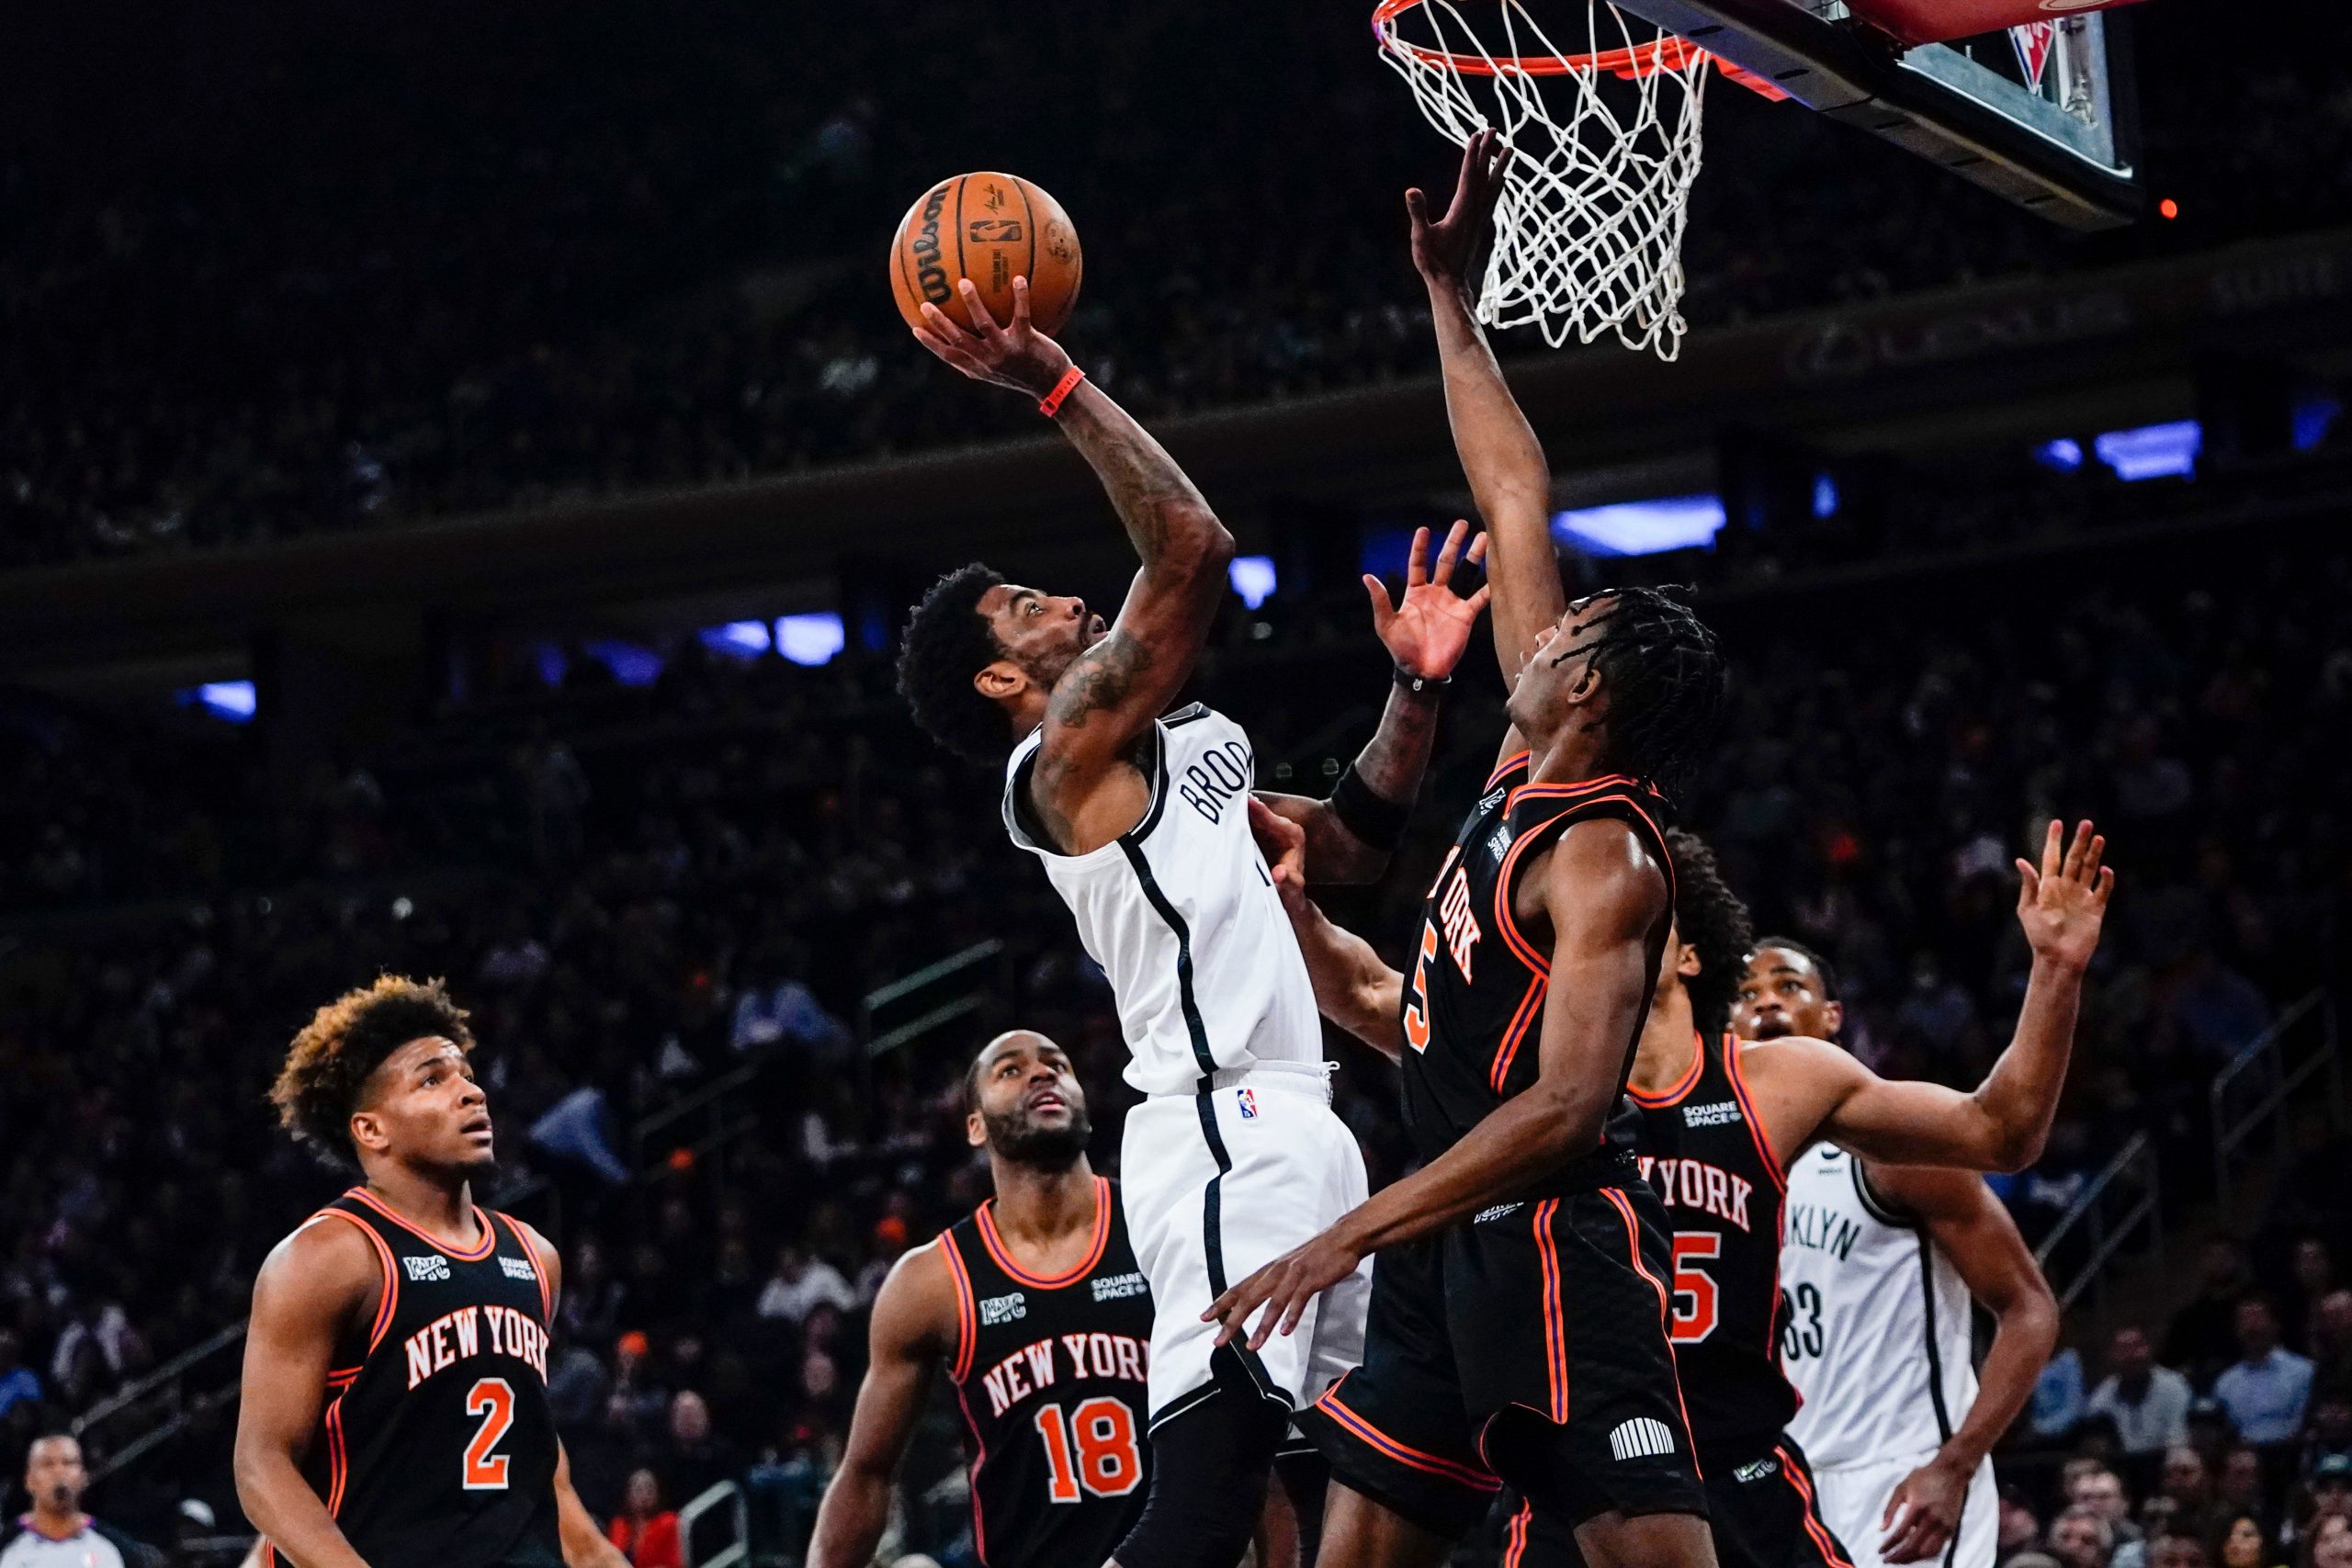 NBA: Brooklyn Nets make mid-game comeback against New York Knicks, win 110-98